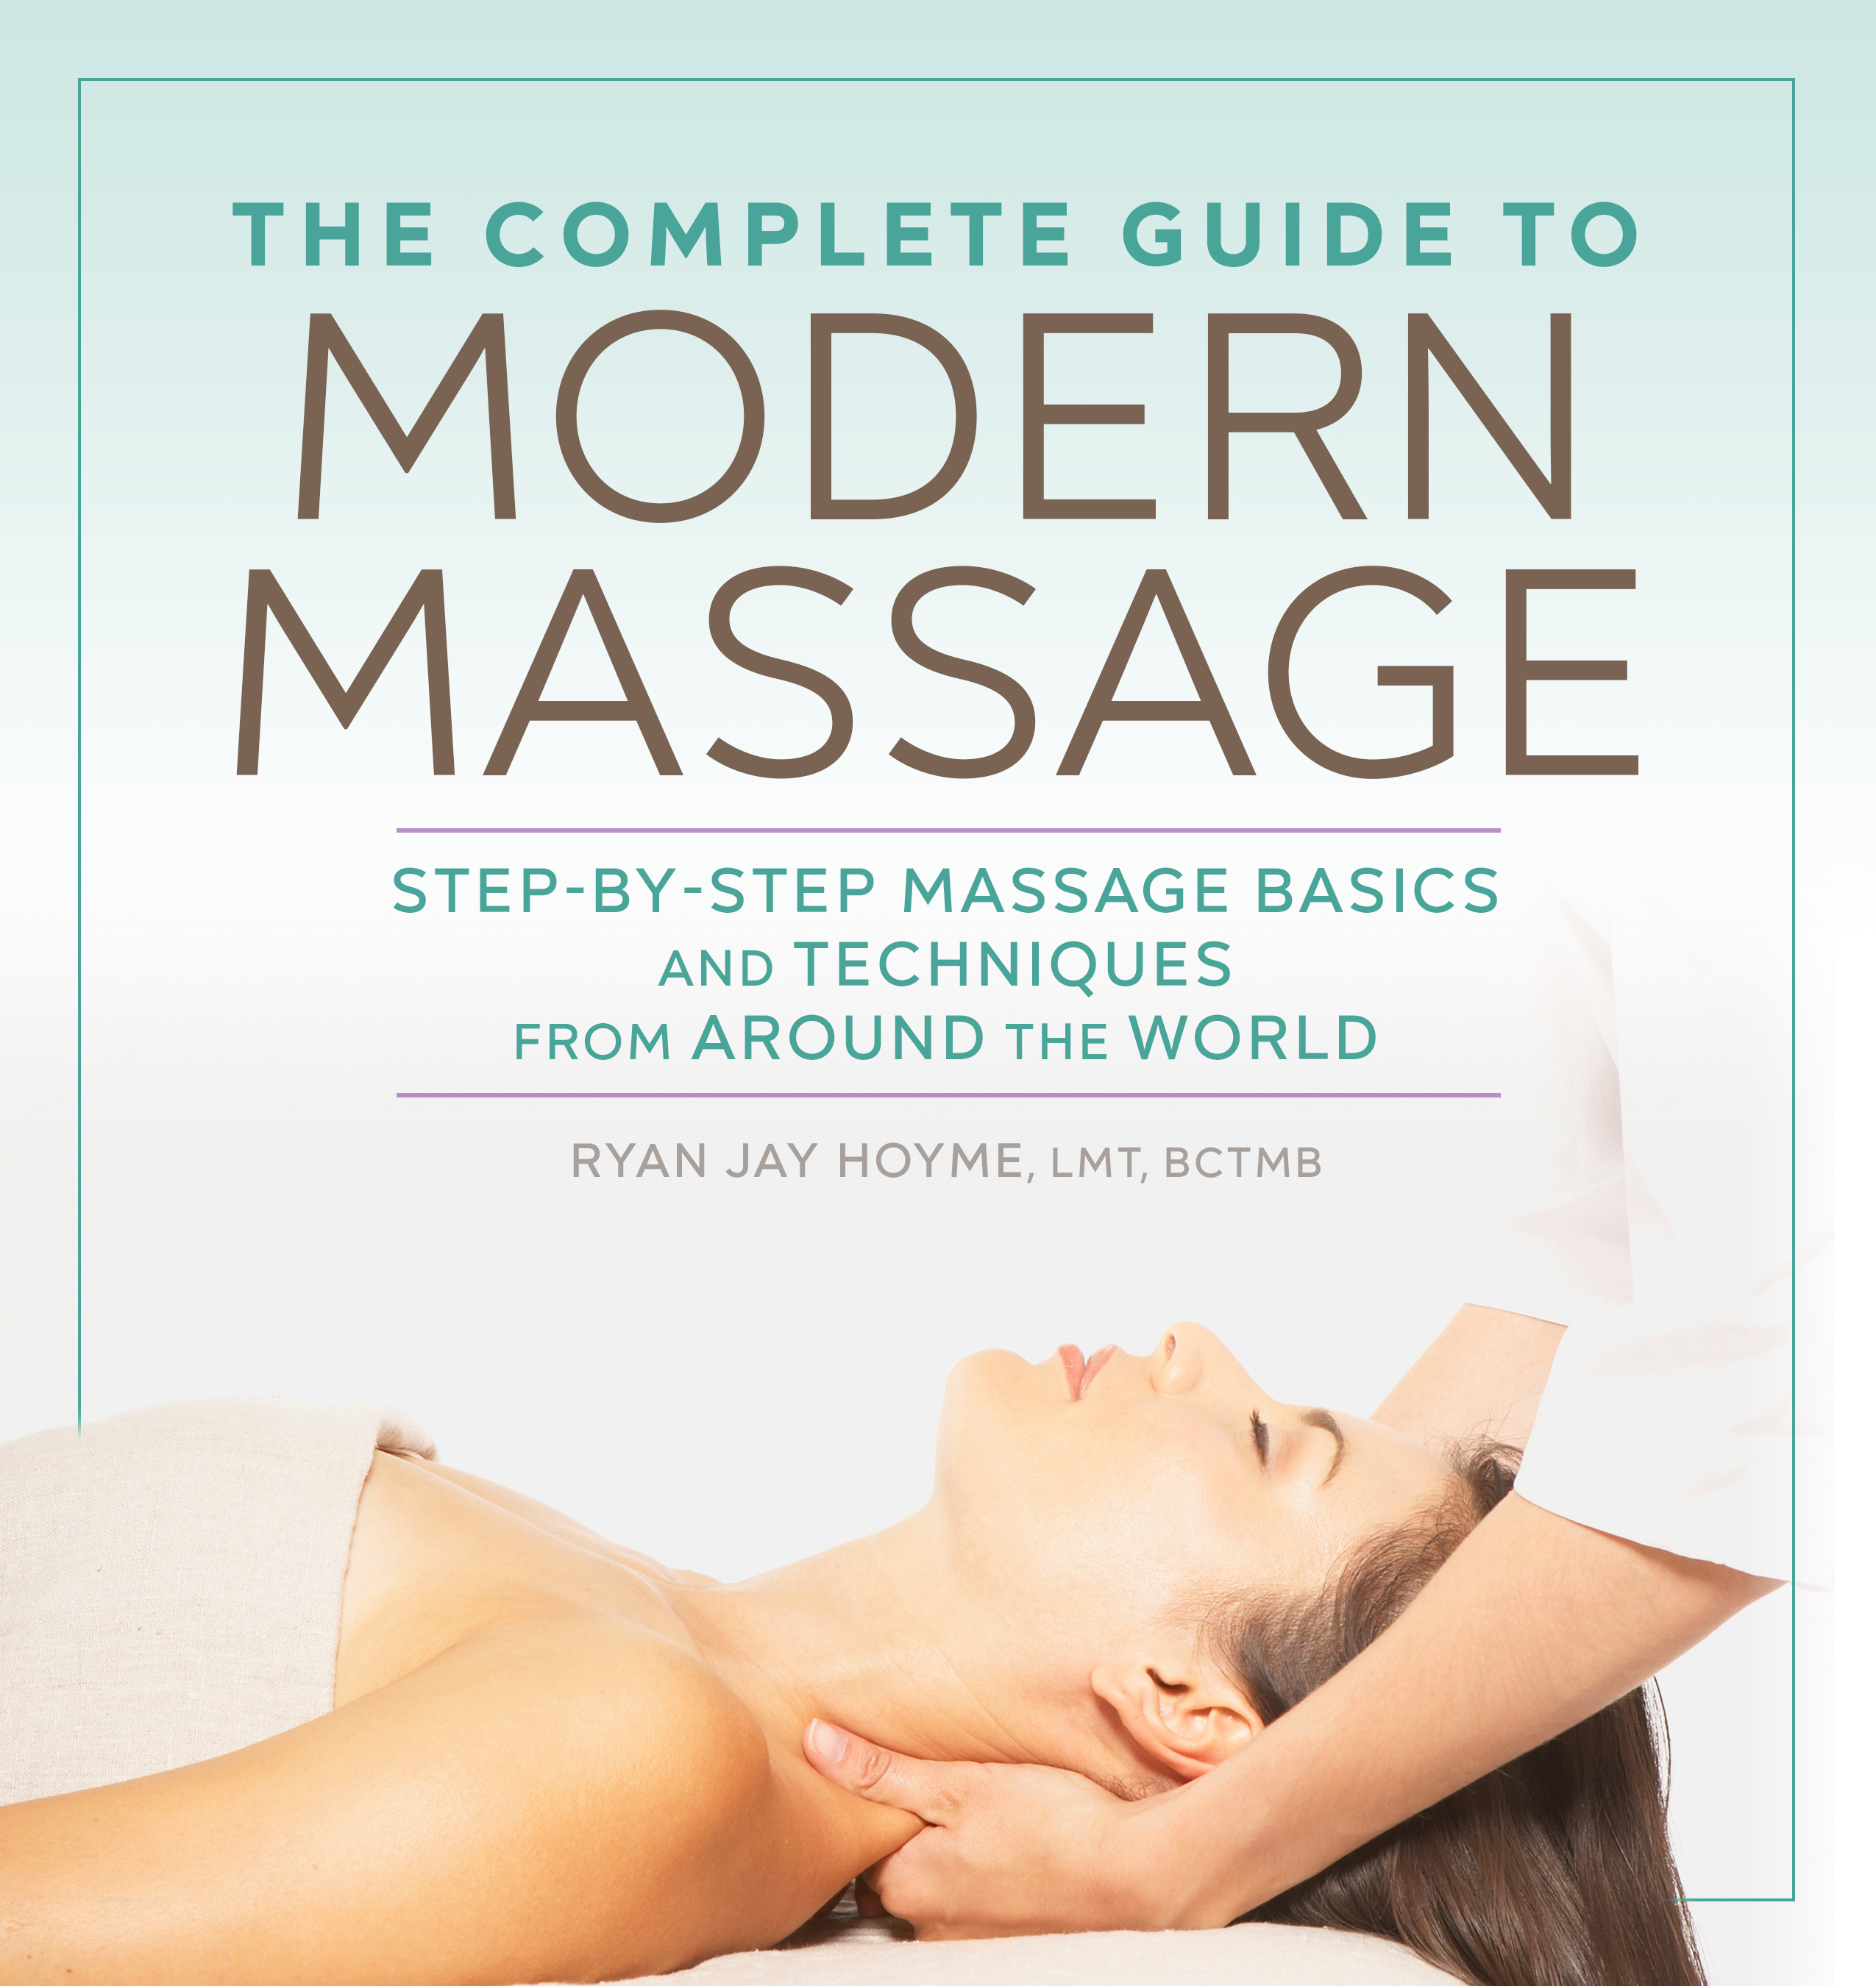 Massage Nerd Massage Massage Videos Massage Pictures Massage Tests